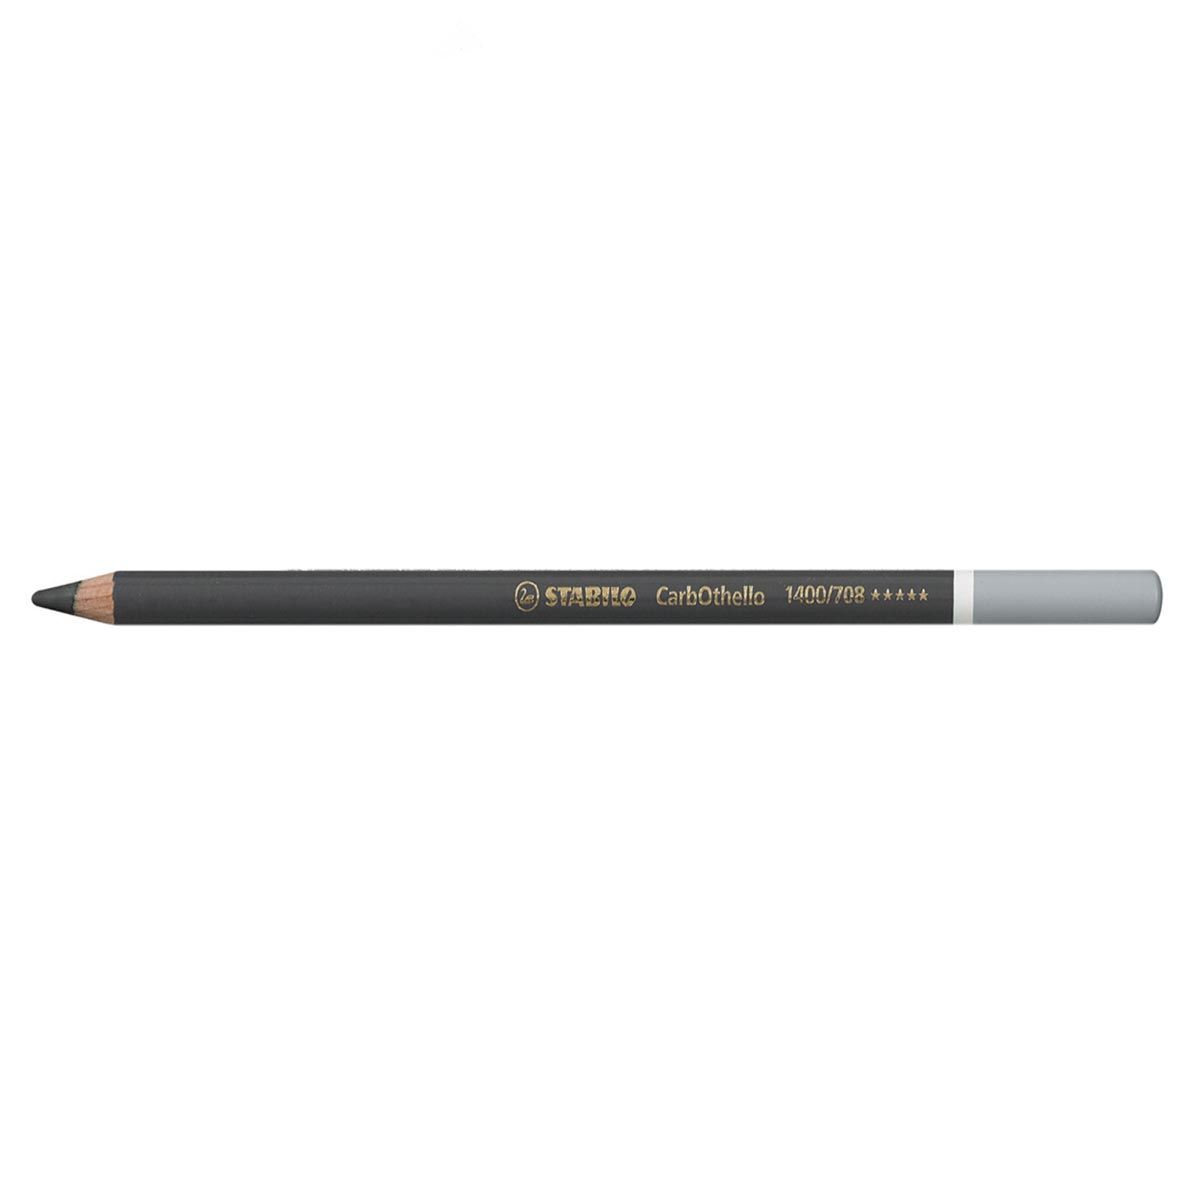 Carbothello Pastel Pencil, Warm Gray 5-708